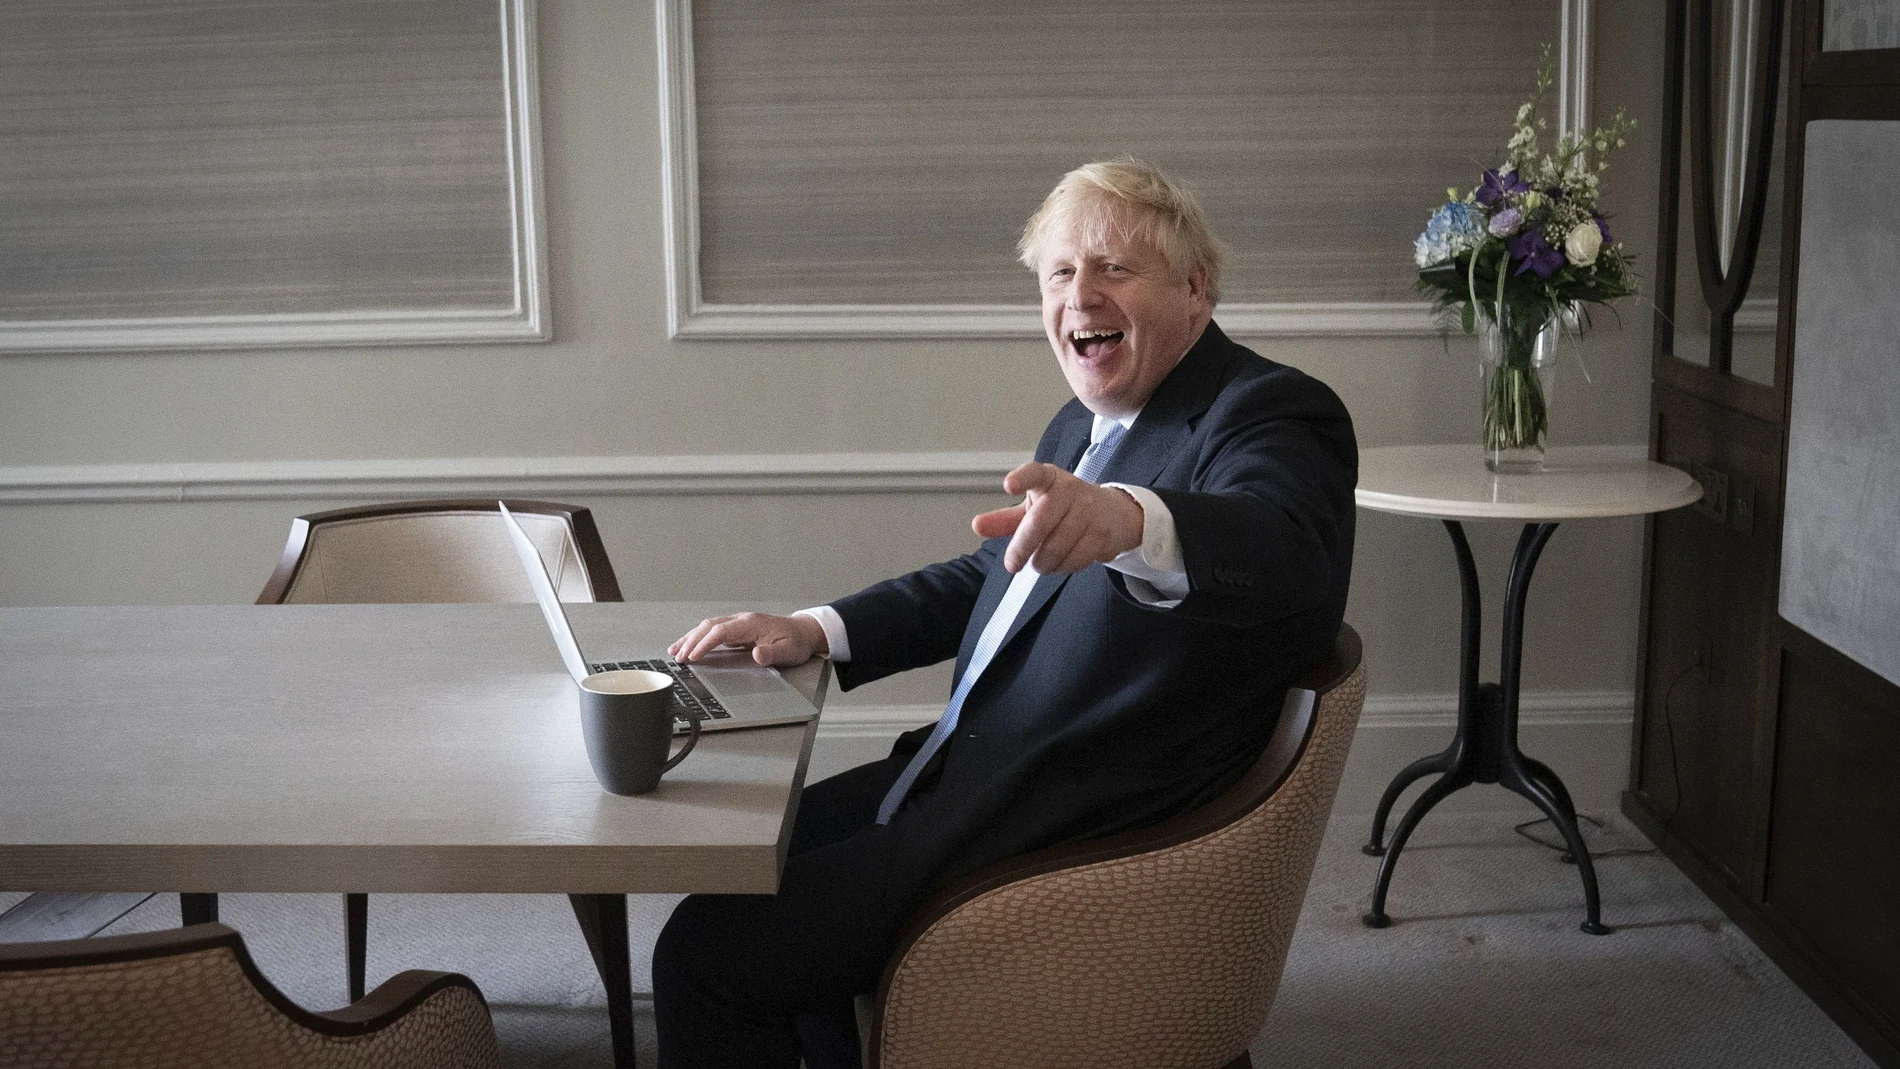 El "premier" Boris Johnson prepara su discurso en su hotel de Manchester